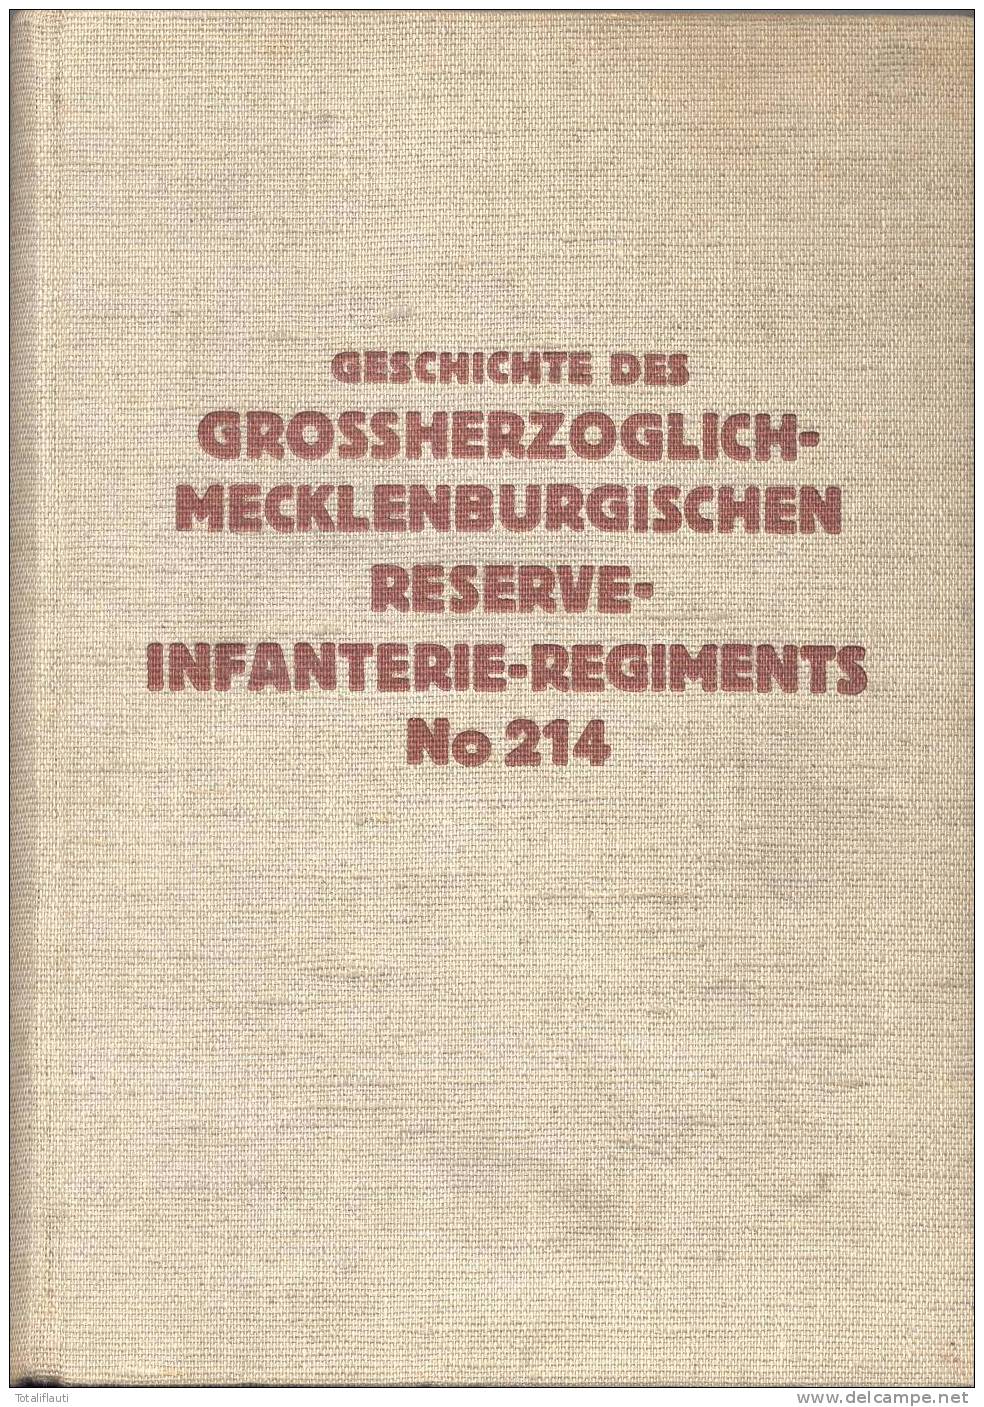 Wytschaete Bogen Grab Oberstleutnant Schröder Gefallen 4.11.1914 B Poesele Cimetiere Malane RIR 214 Original Fotokarte - Messines - Mesen